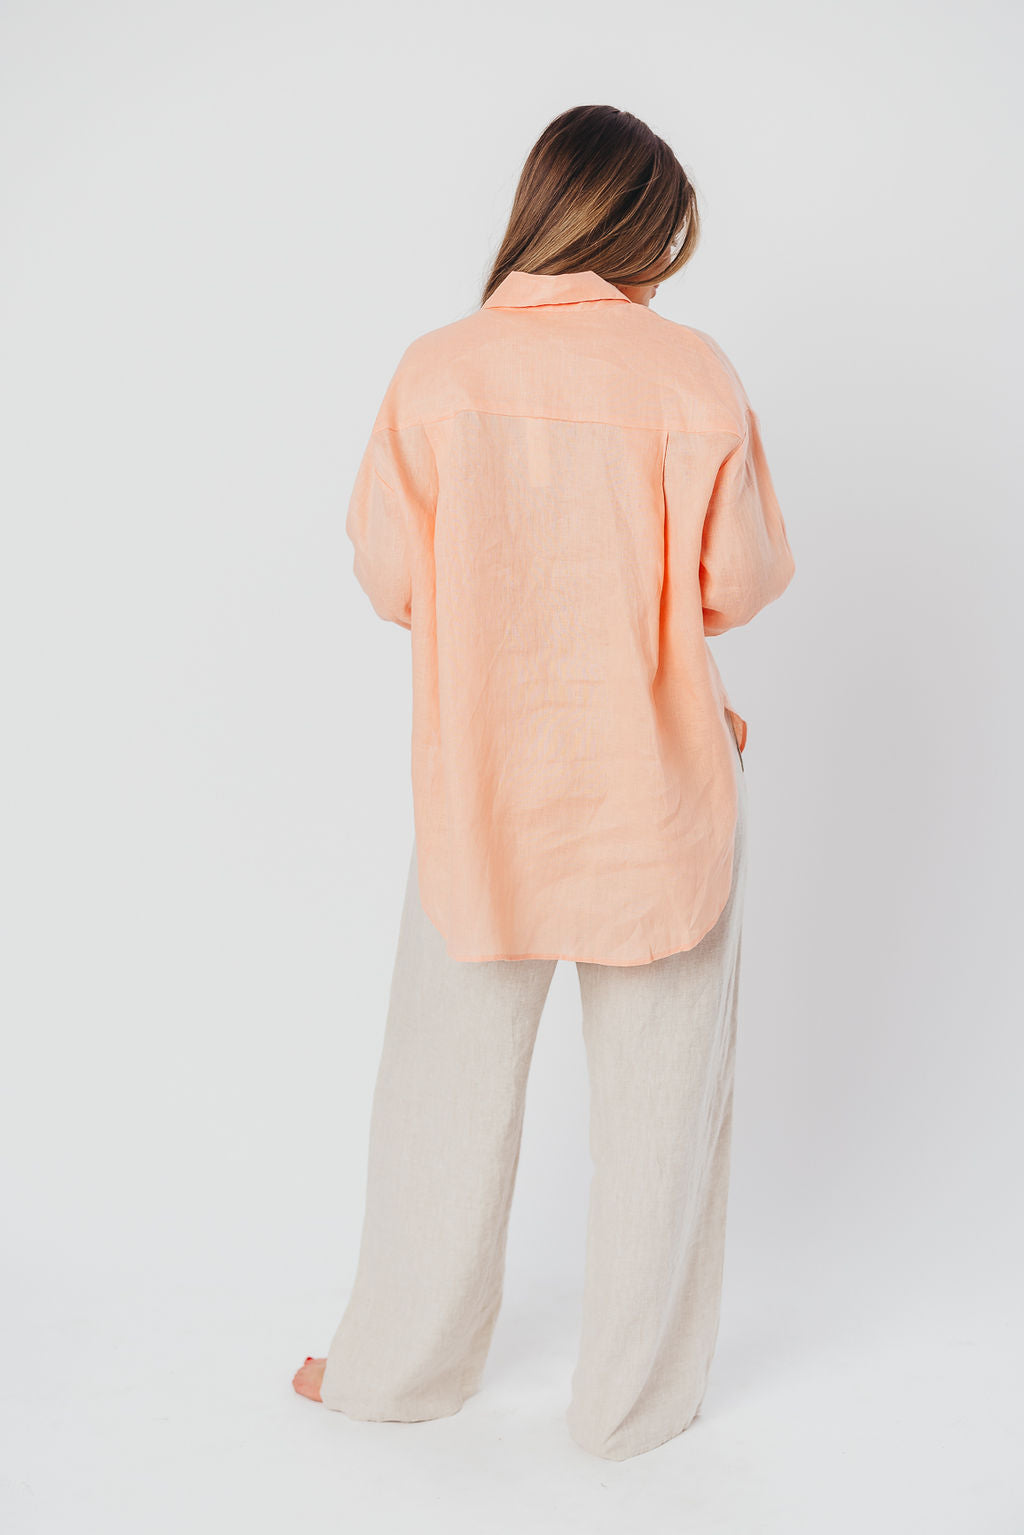 Helen 100% Linen Shirt in Peach - Nursing Friendly